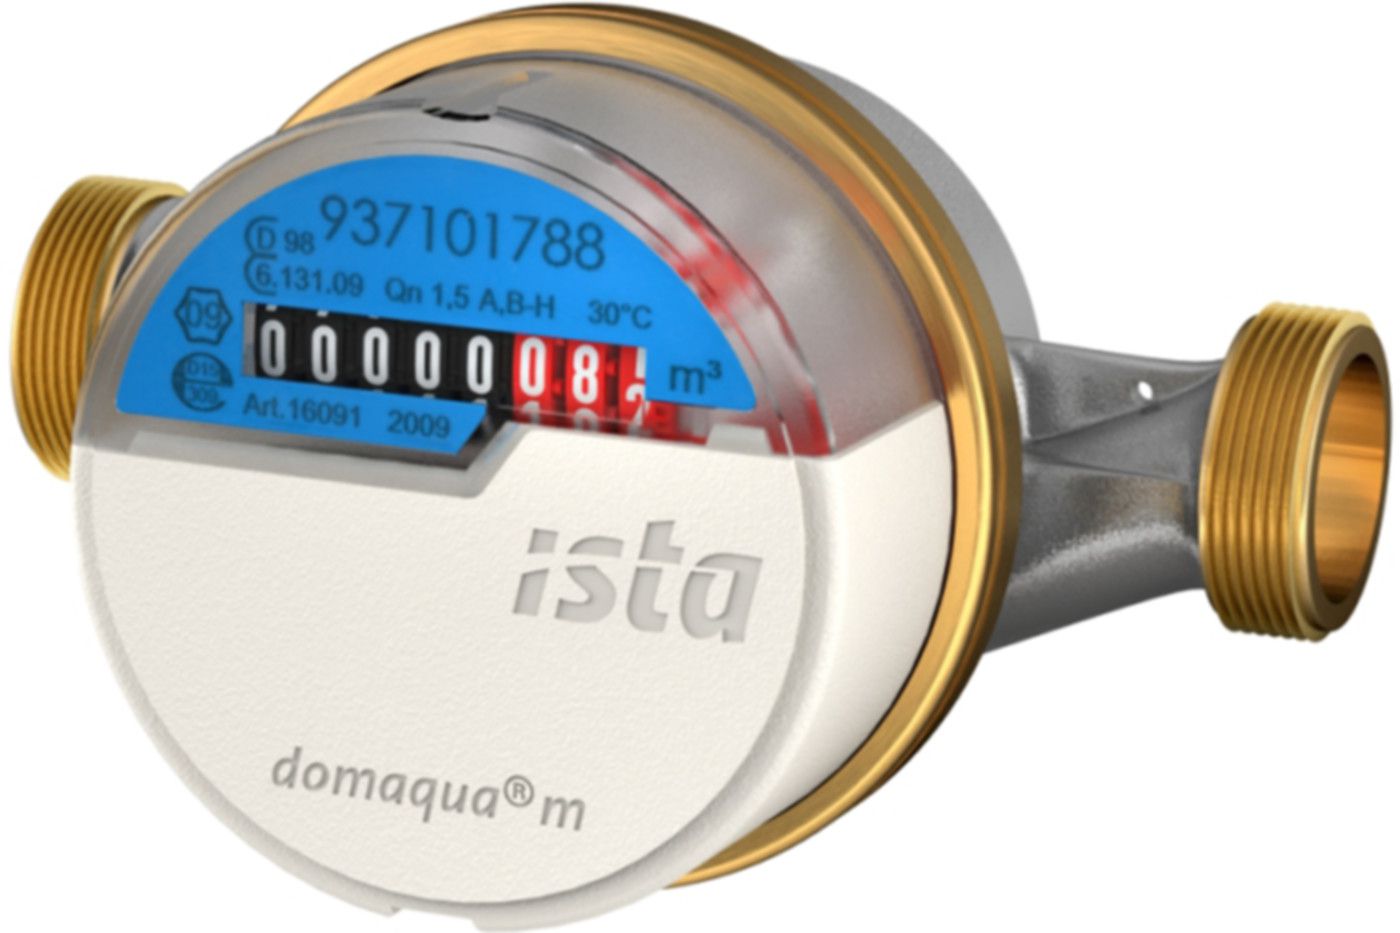 Aufputzzähler Domaqua m DN 15 1/2" G 3/4" - 110 mm warm 2.5 m3/h  16095 - ISTA - Wärme- / Wasserzähler